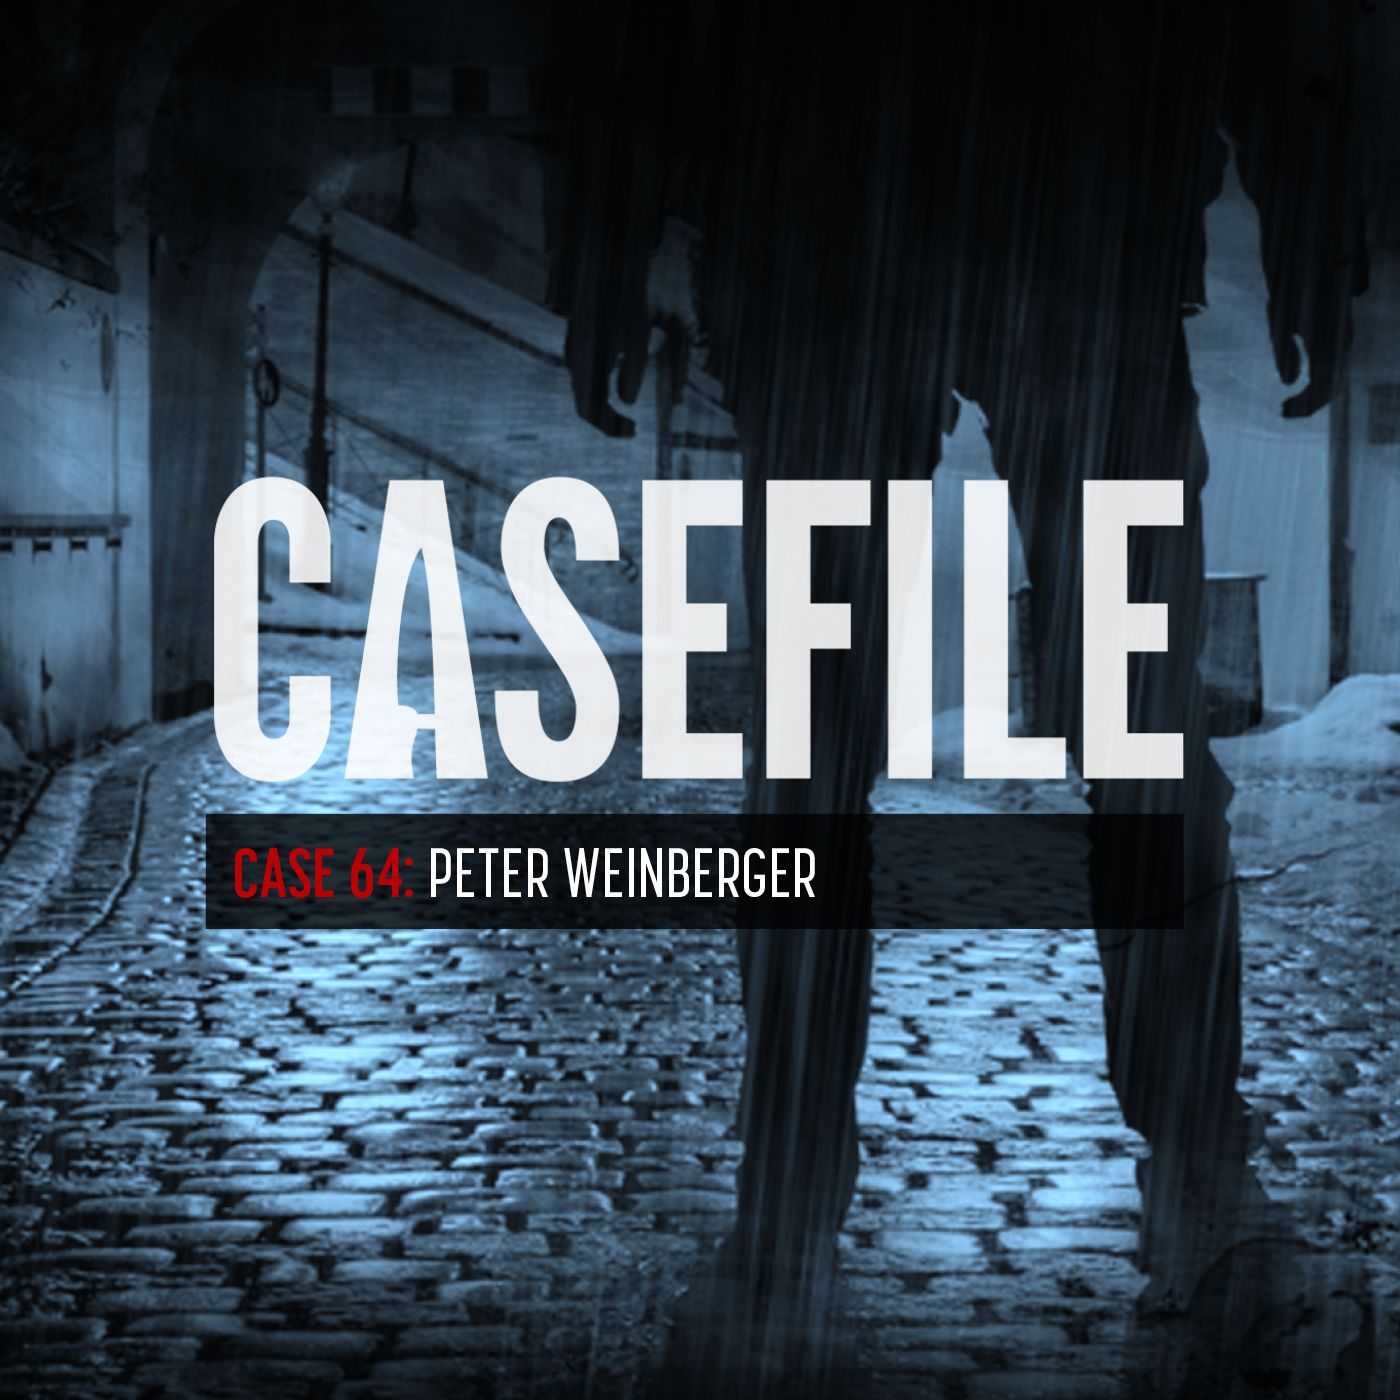 Case 64: Peter Weinberger